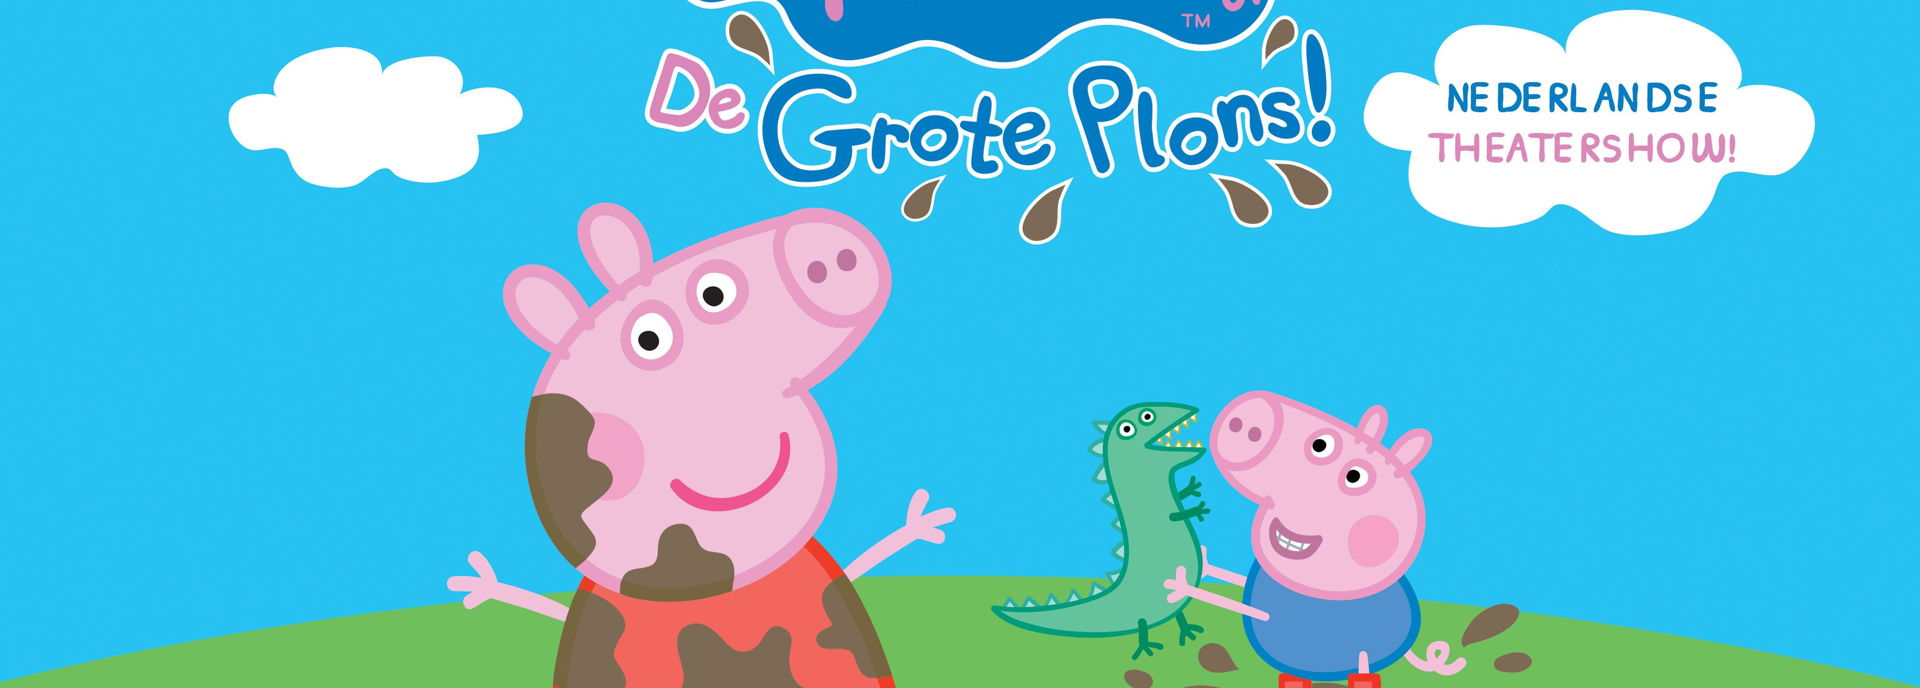 Peppa Pig stond met de Nederlandse Theatershow in De Tamboer